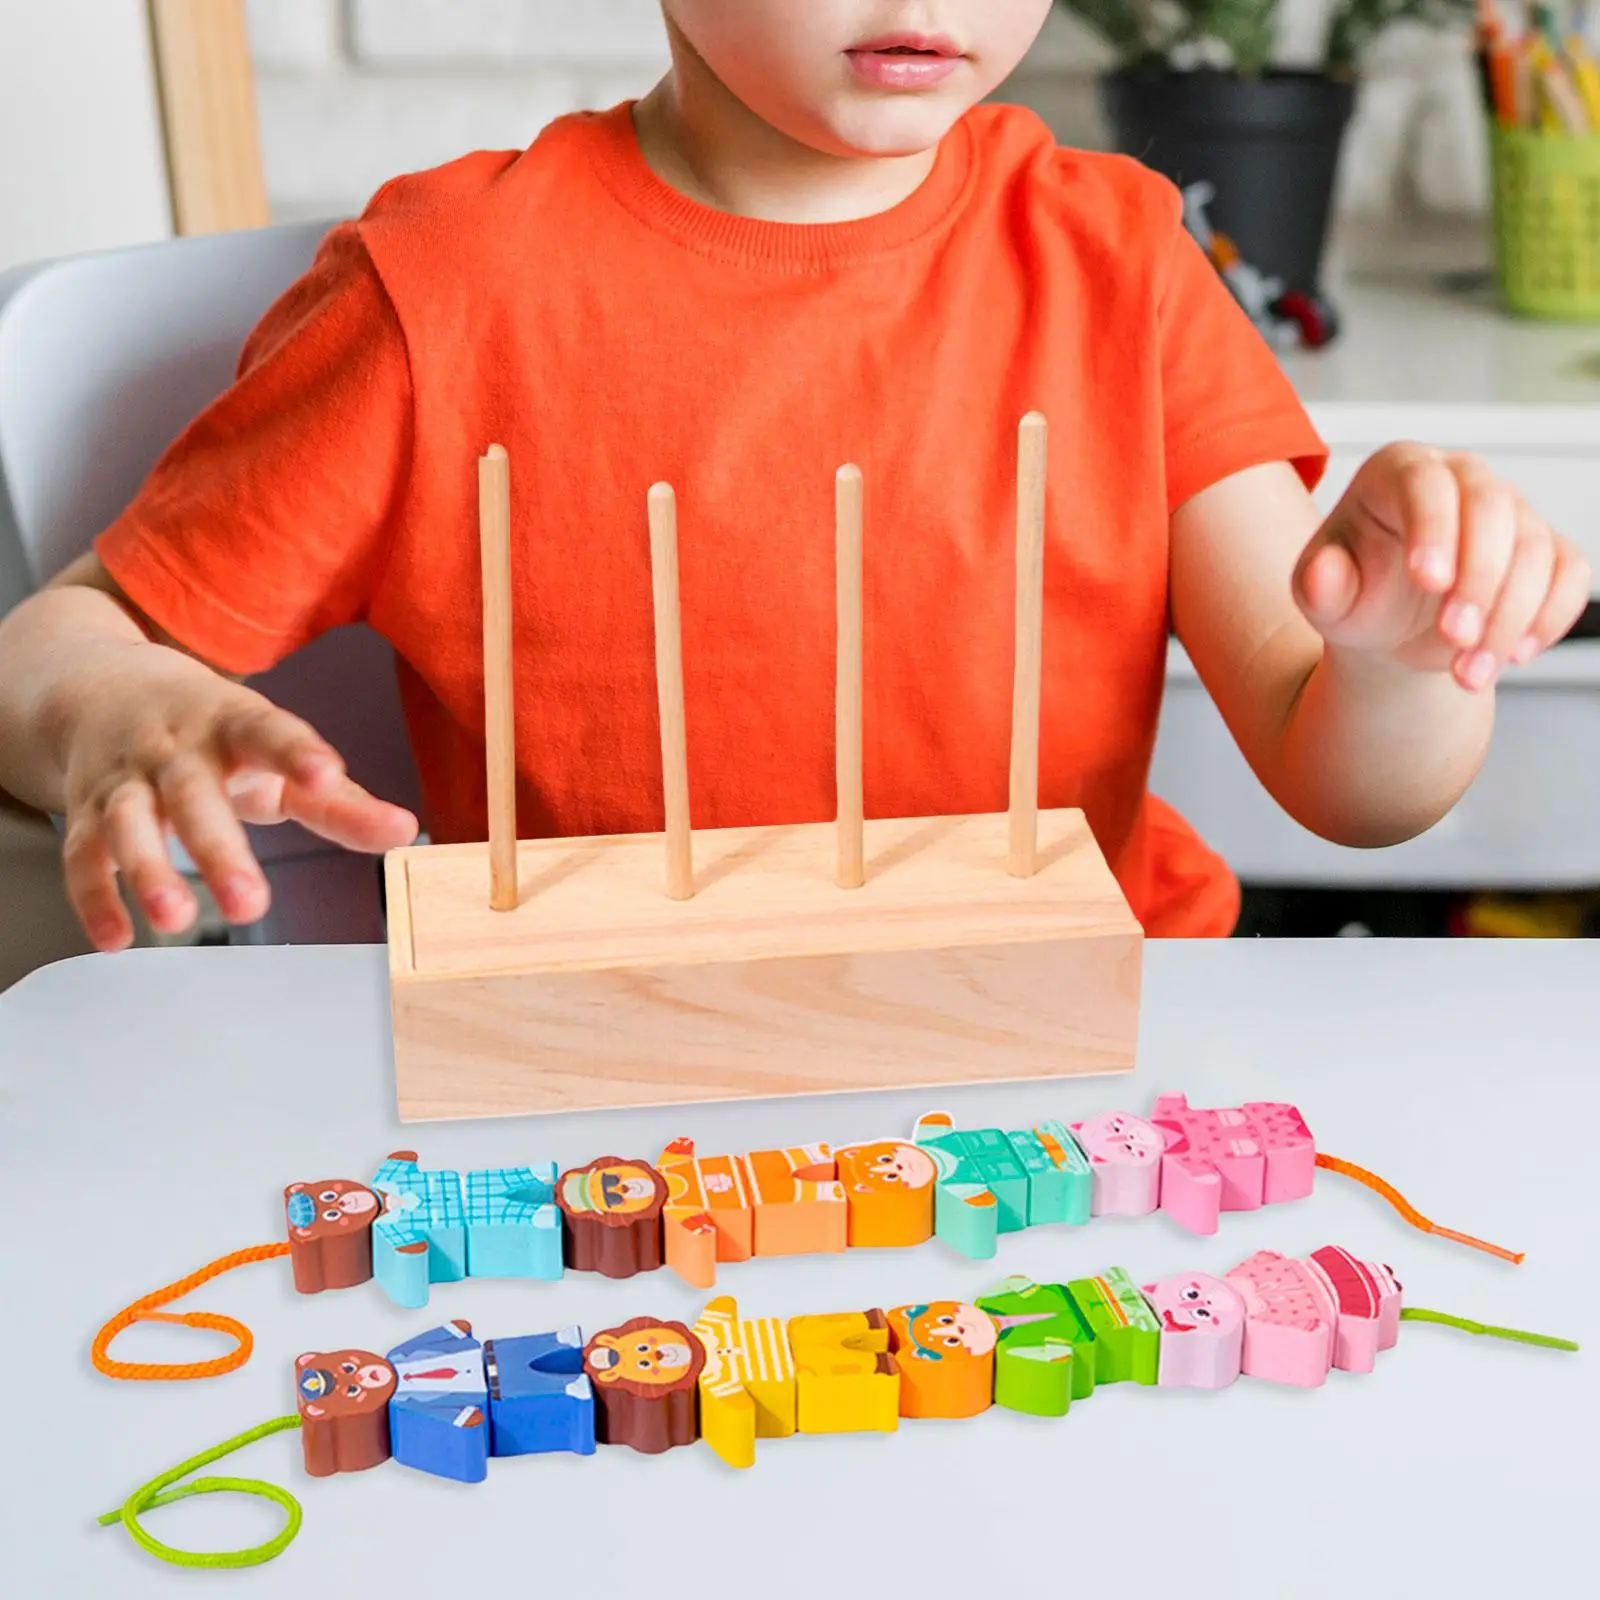 Сенсорное развитие детей 2-3 лет через дидактические игры